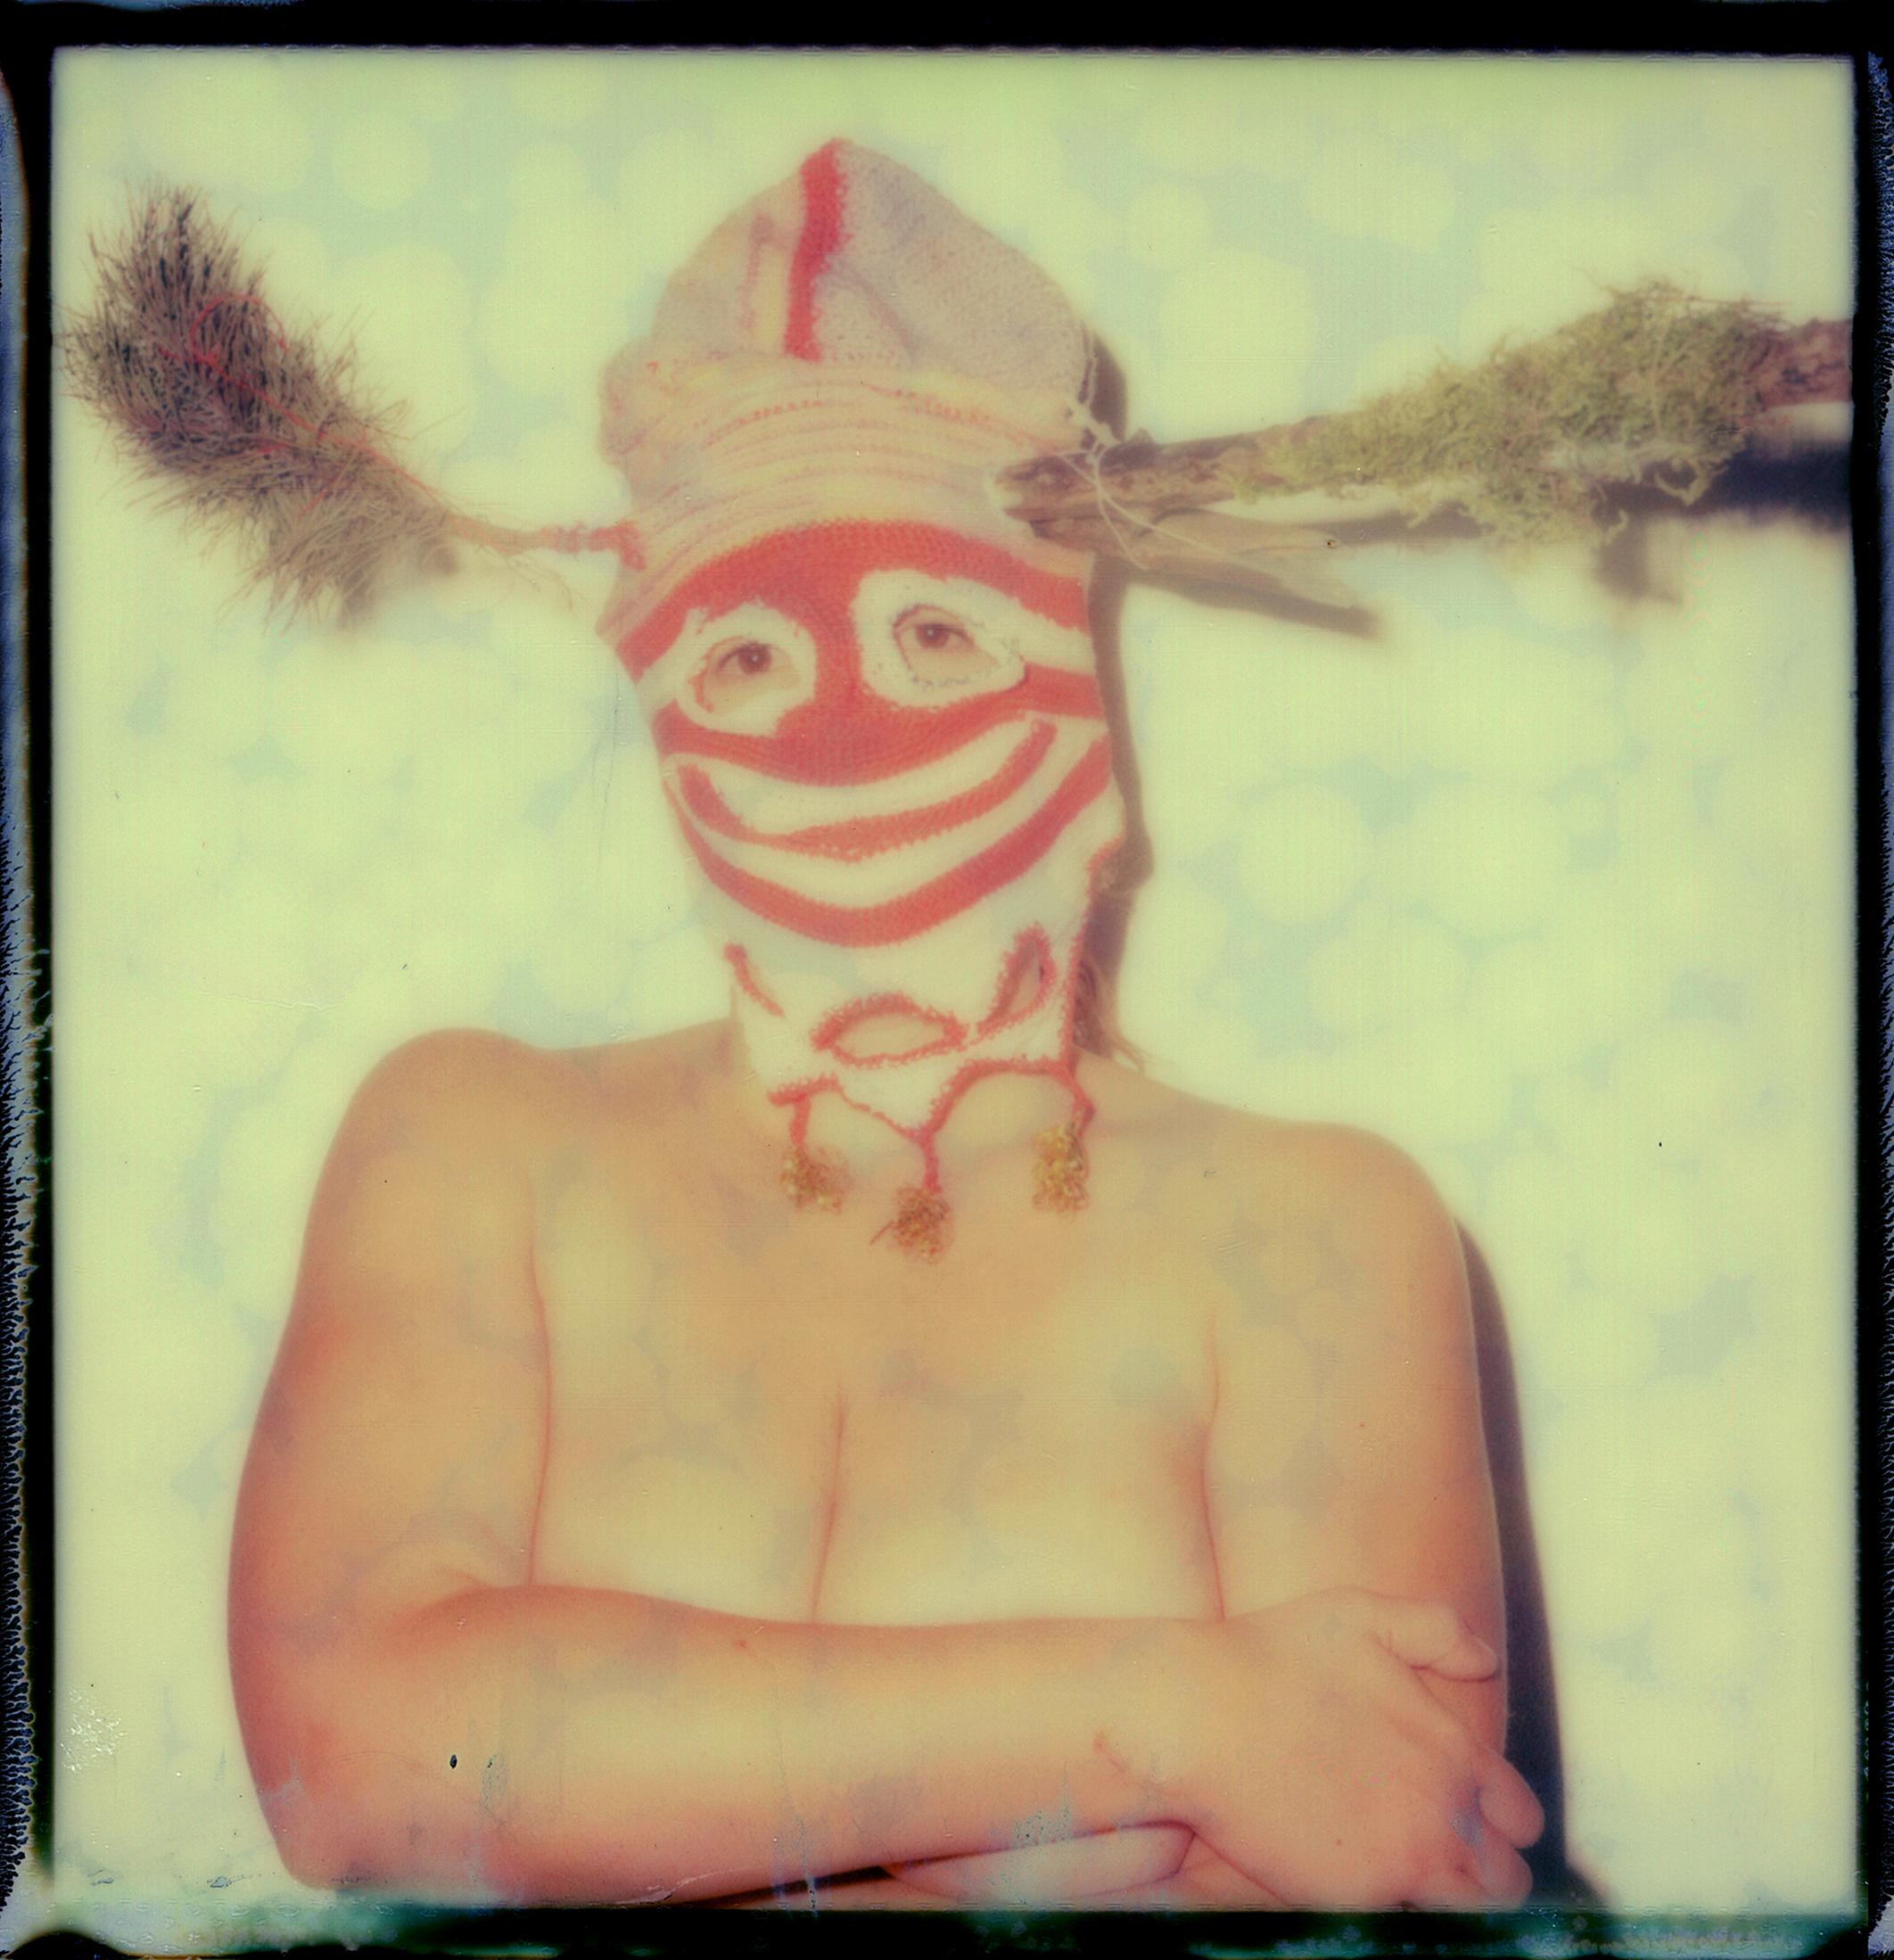 Masque contemporain, conceptuel, Polaroid, 21e siècle, portrait, couleur - Photograph de Urizen Freaza